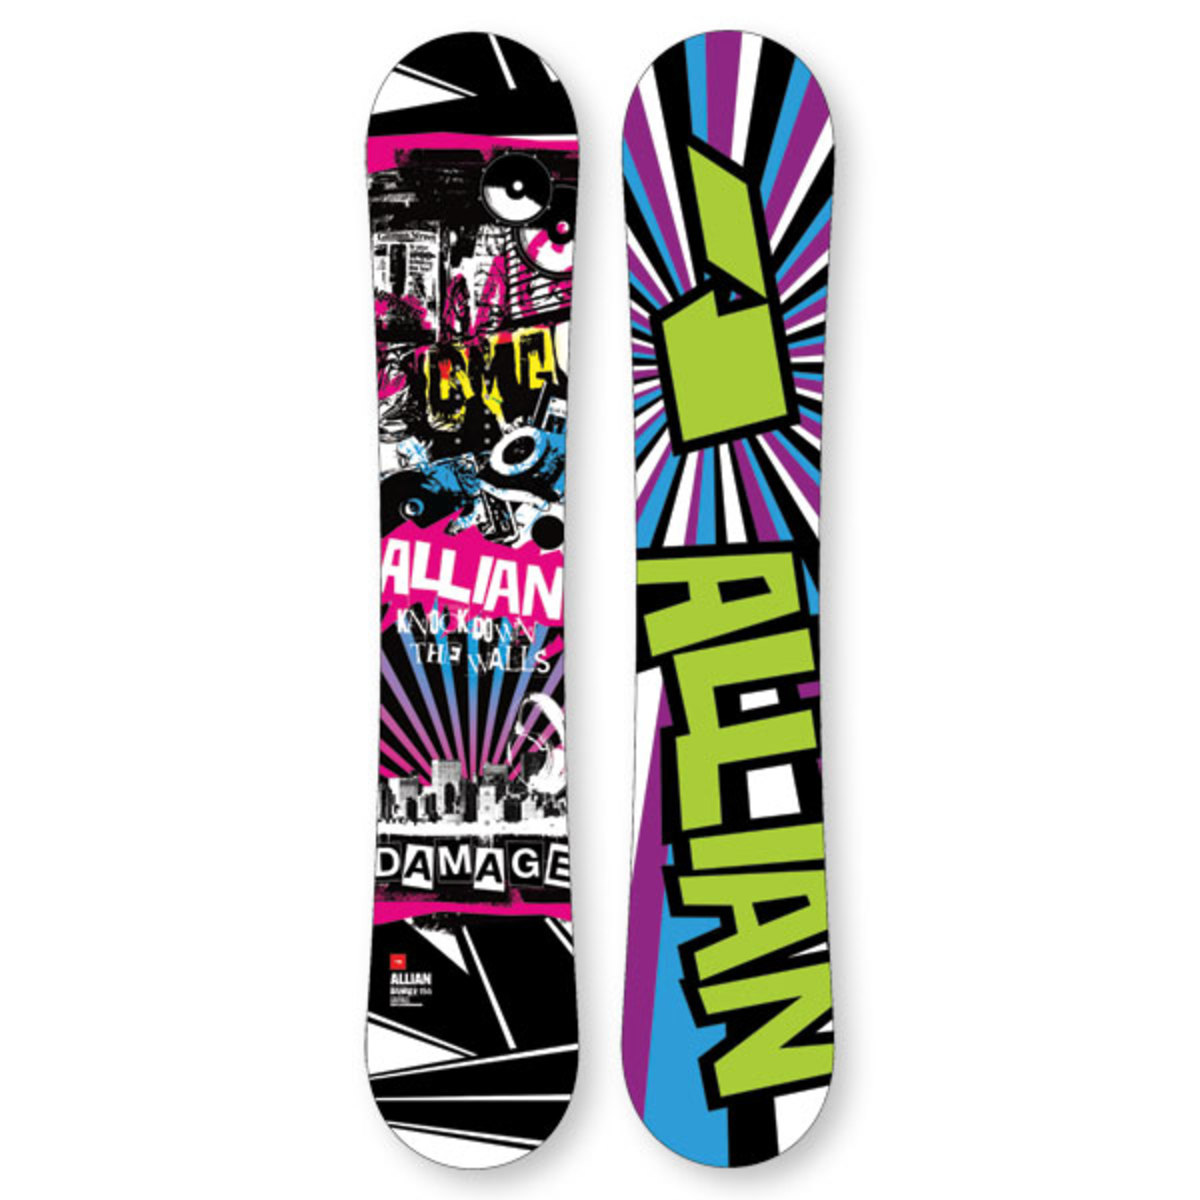 Buy Allian Damage Snowboard - Shop for Snowboard Gear at